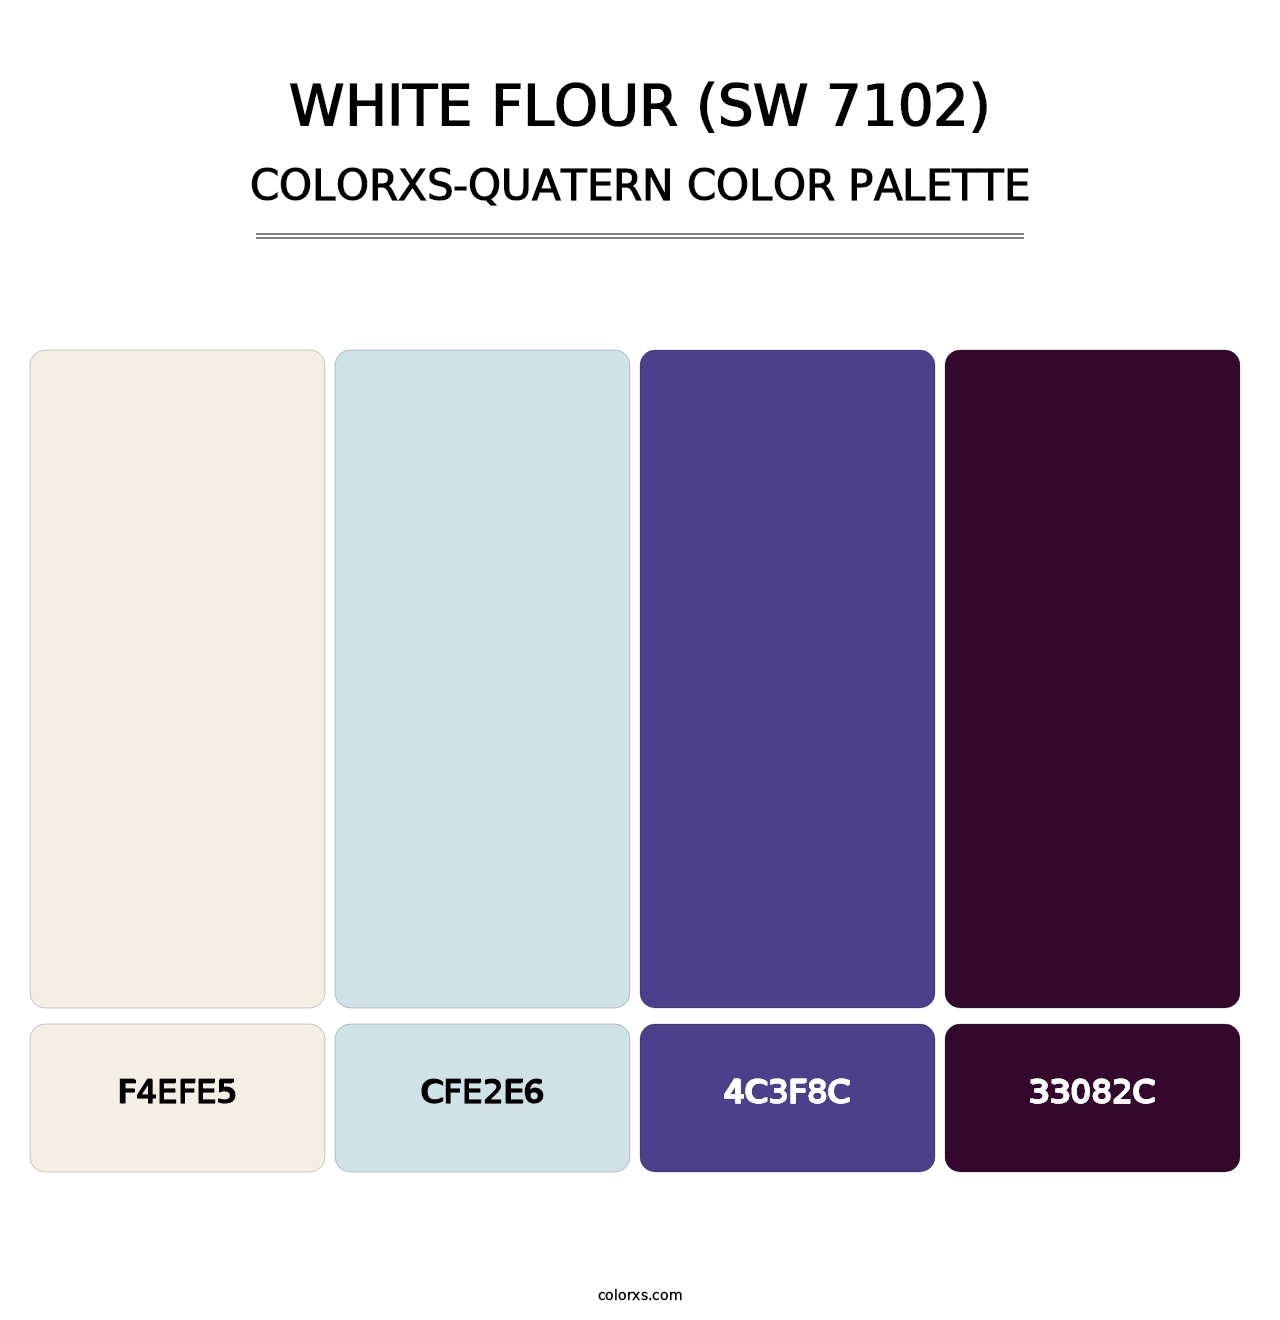 White Flour (SW 7102) - Colorxs Quatern Palette